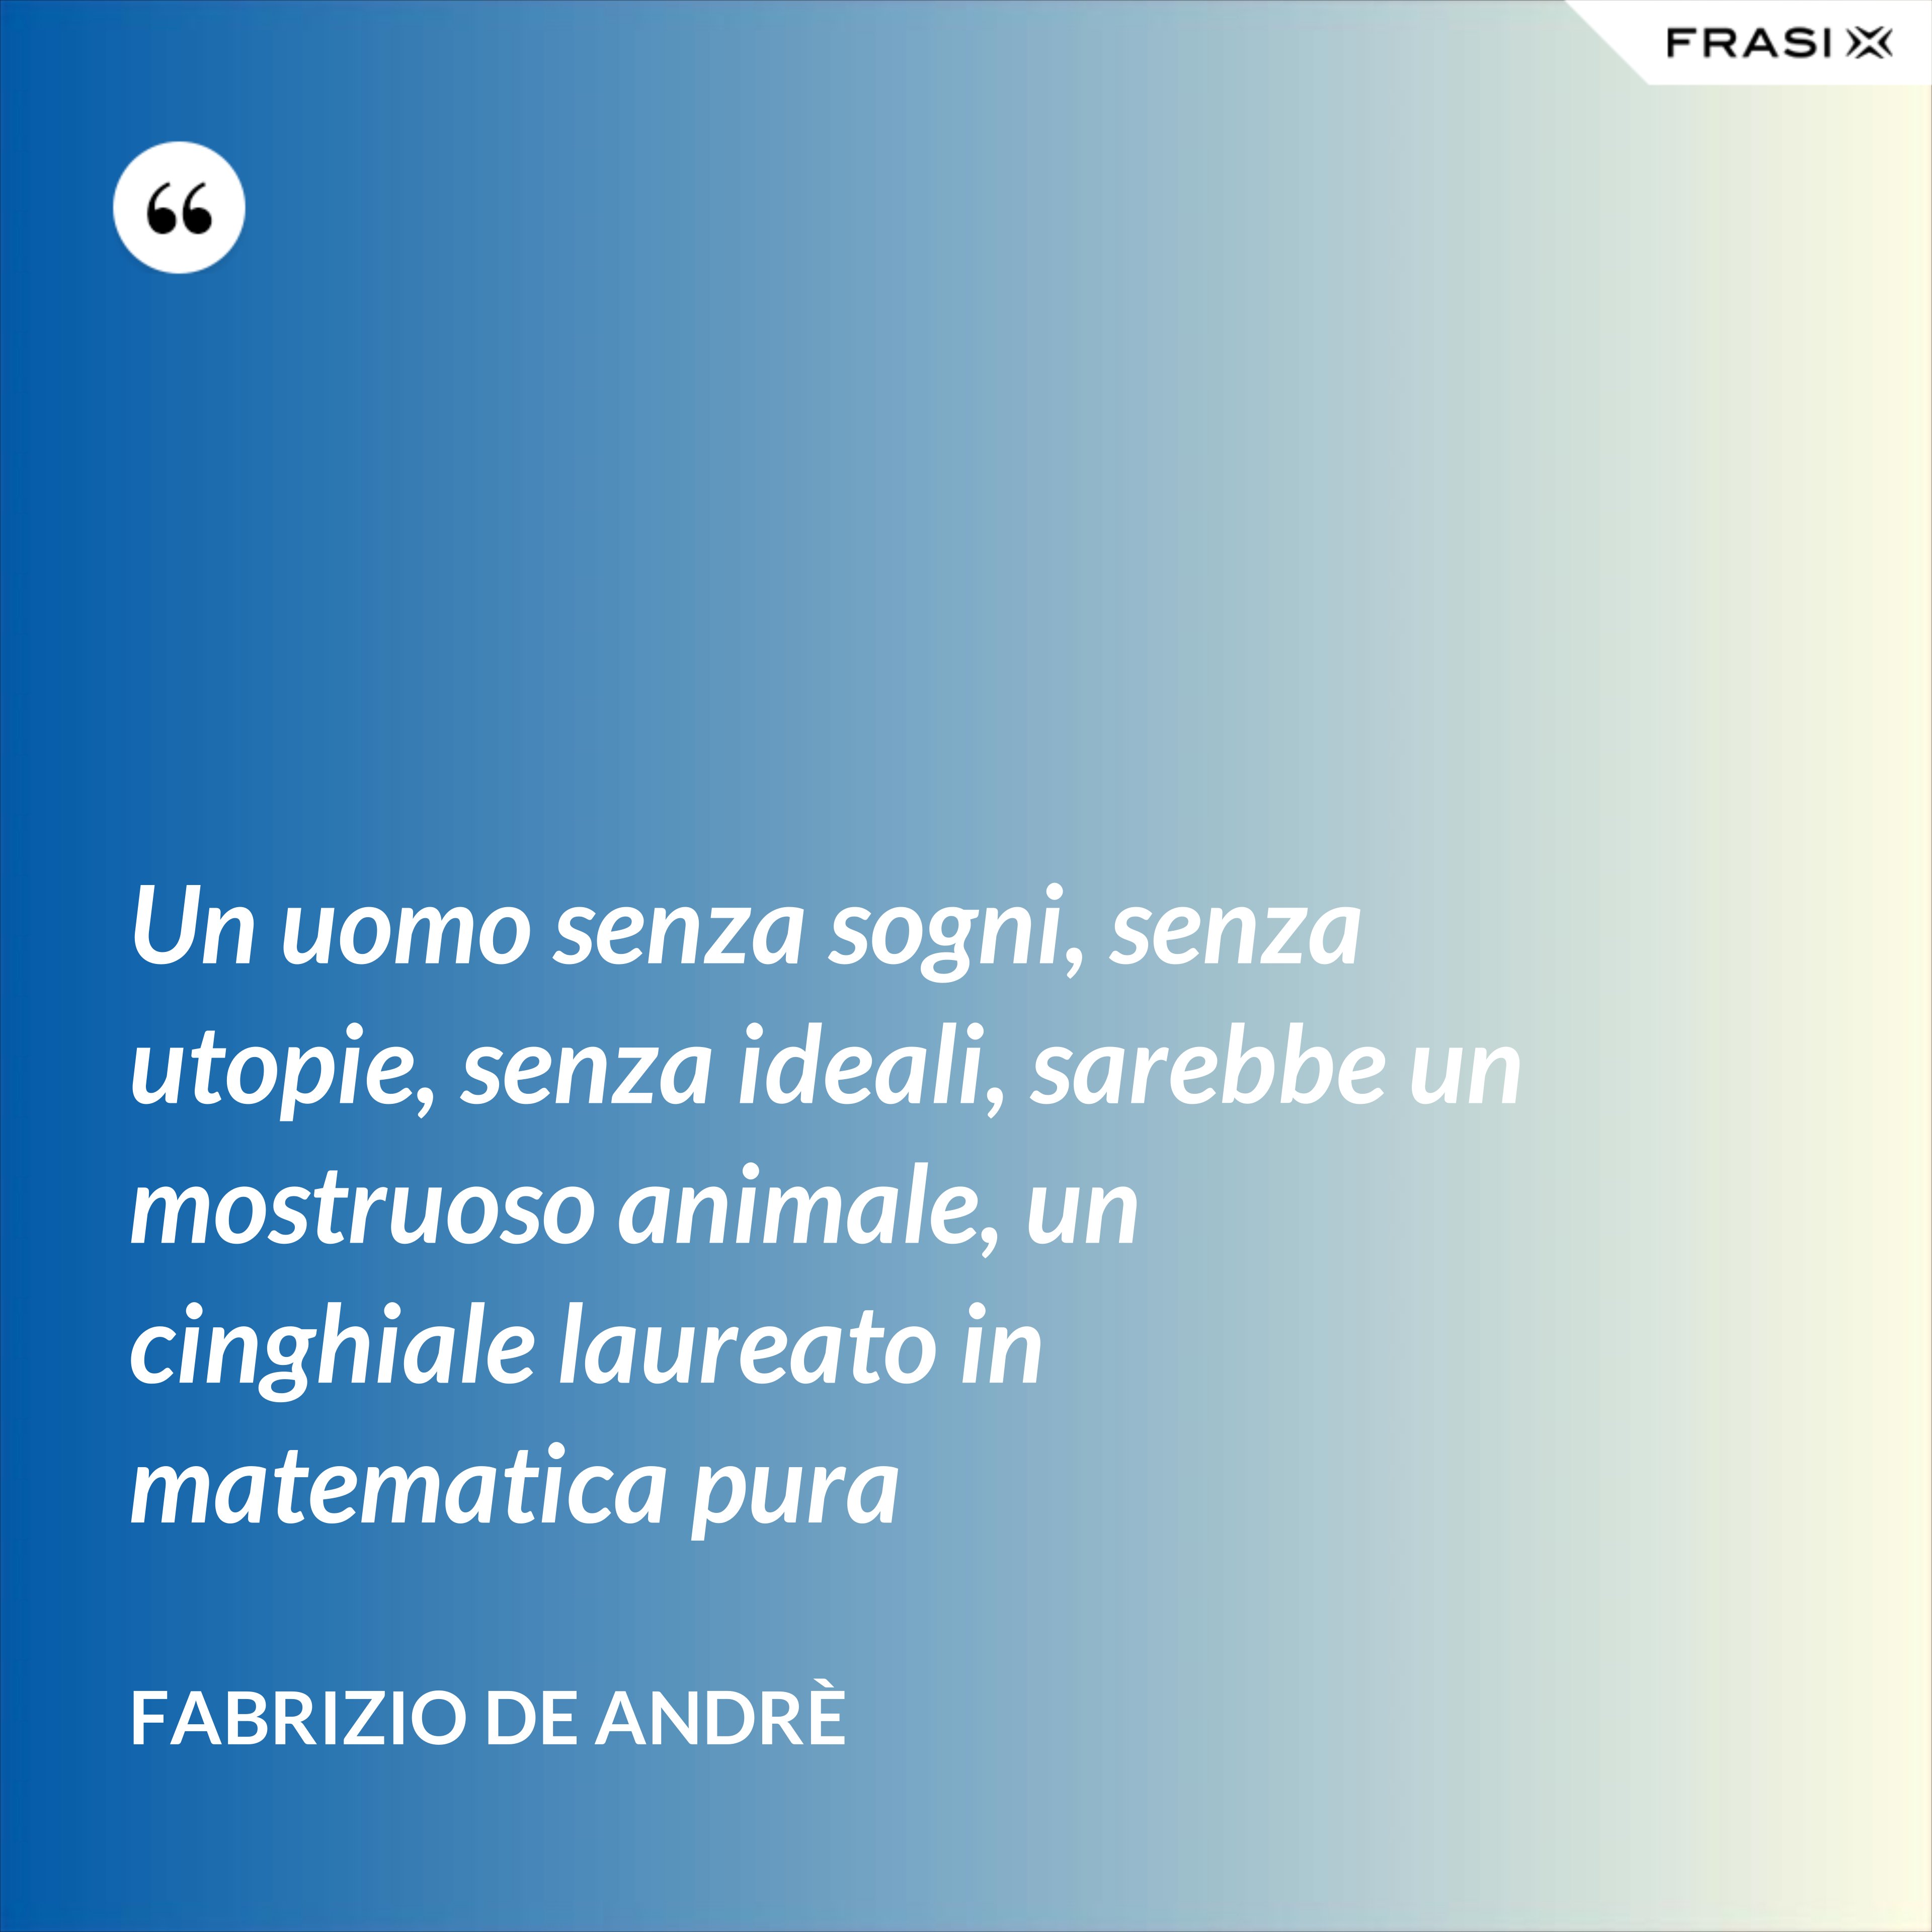 Un uomo senza sogni, senza utopie, senza ideali, sarebbe un mostruoso animale, un cinghiale laureato in matematica pura - Fabrizio De Andrè